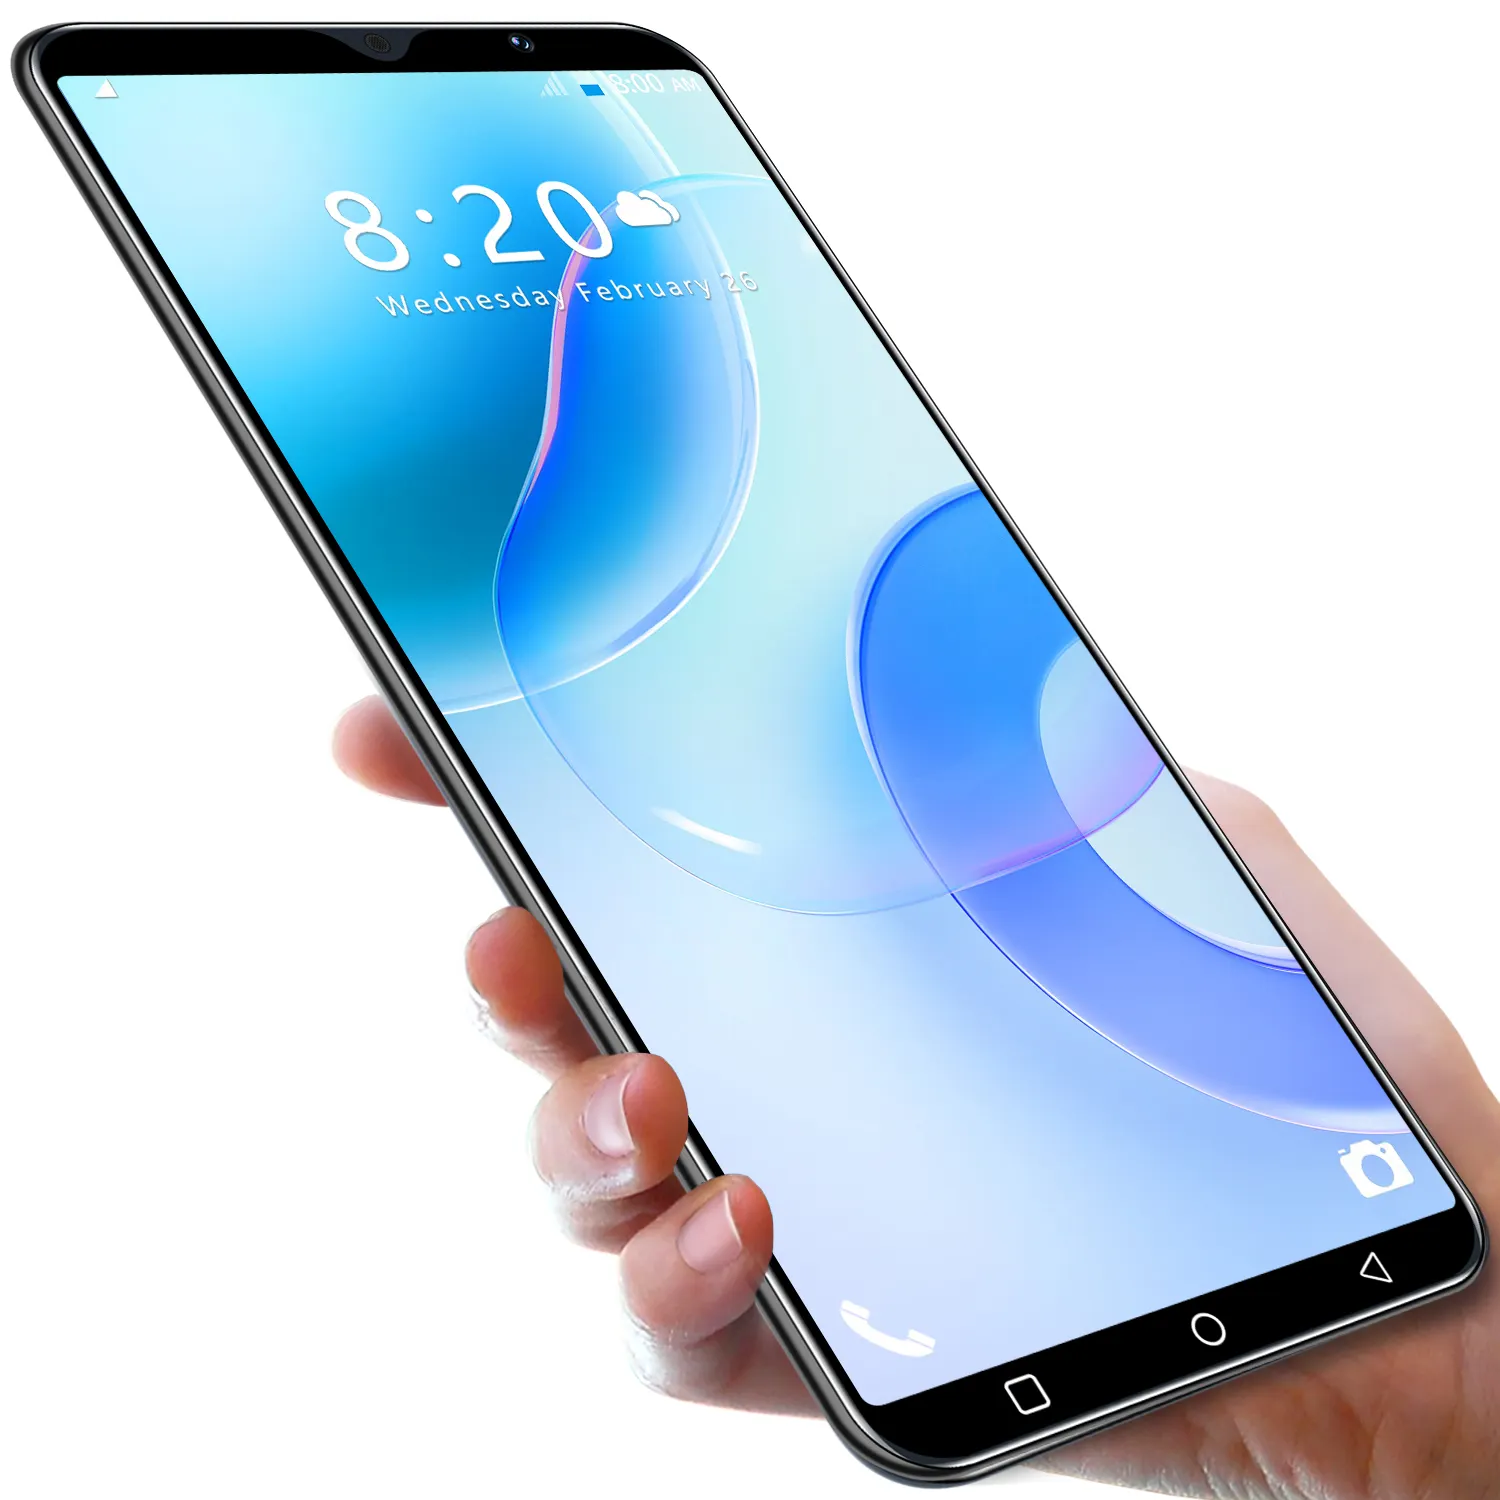 2023 nuovo smartphone transfrontaliero Nowa8pro macchina all-in-one 8 + 256G di memoria 6.0 pollici telefono cellulare per il commercio estero